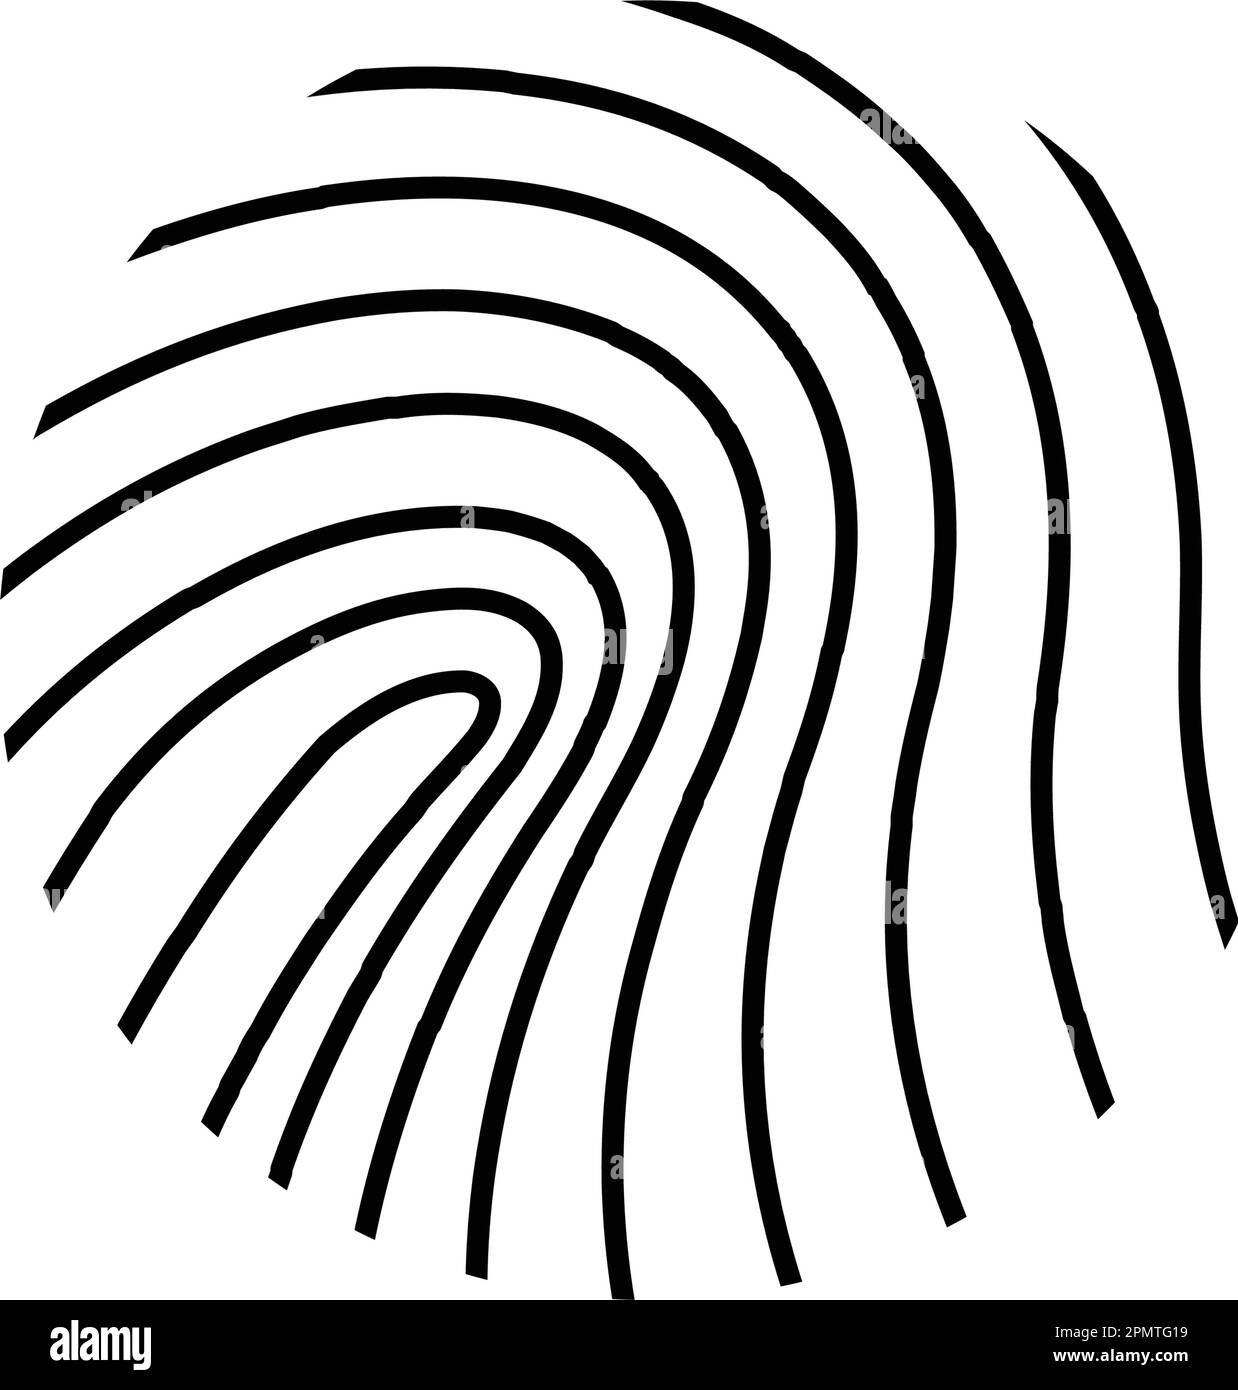 fingerprint probe logo vector illustration design Stock Vector